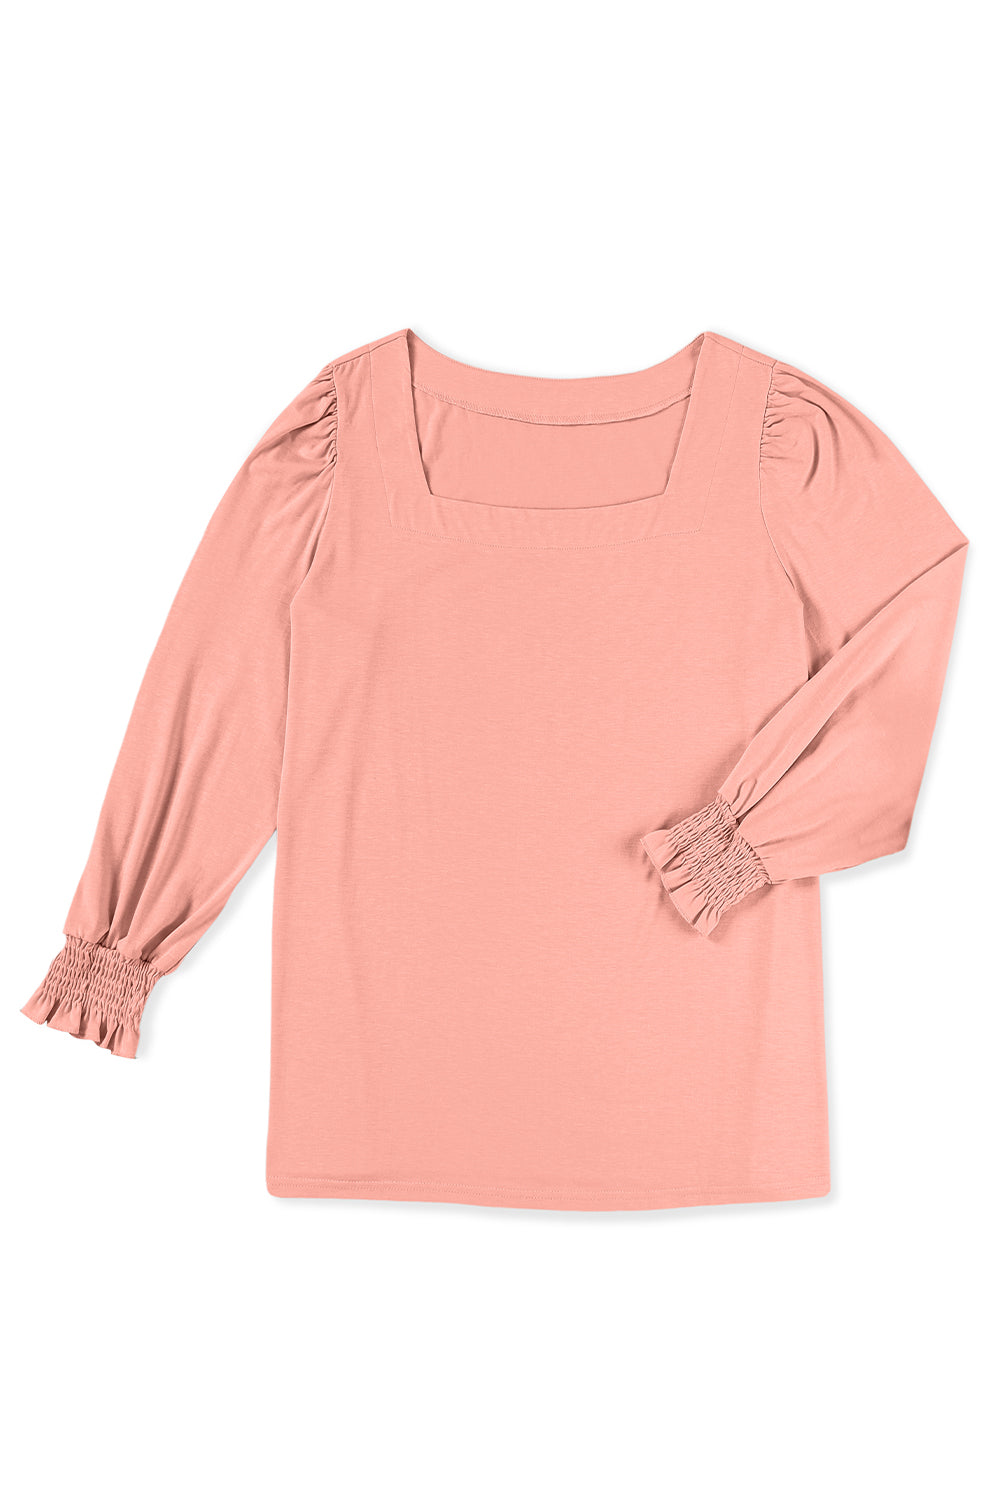 Rožnata majica s kvadratastim izrezom in rokavi velike velikosti